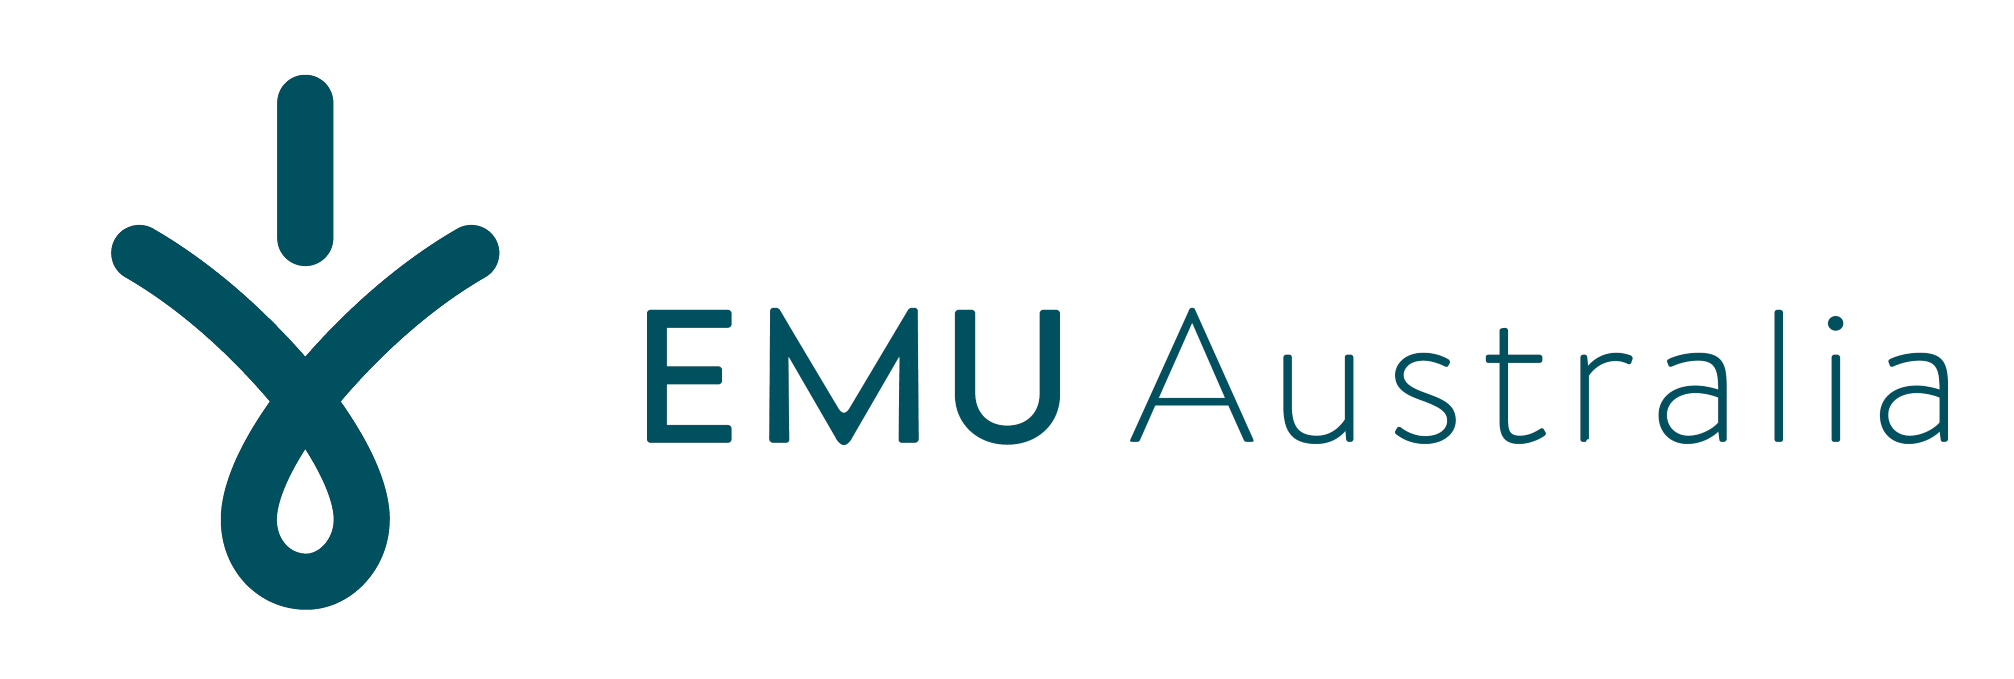 Emu Logo - EMU Australia – Logos Download